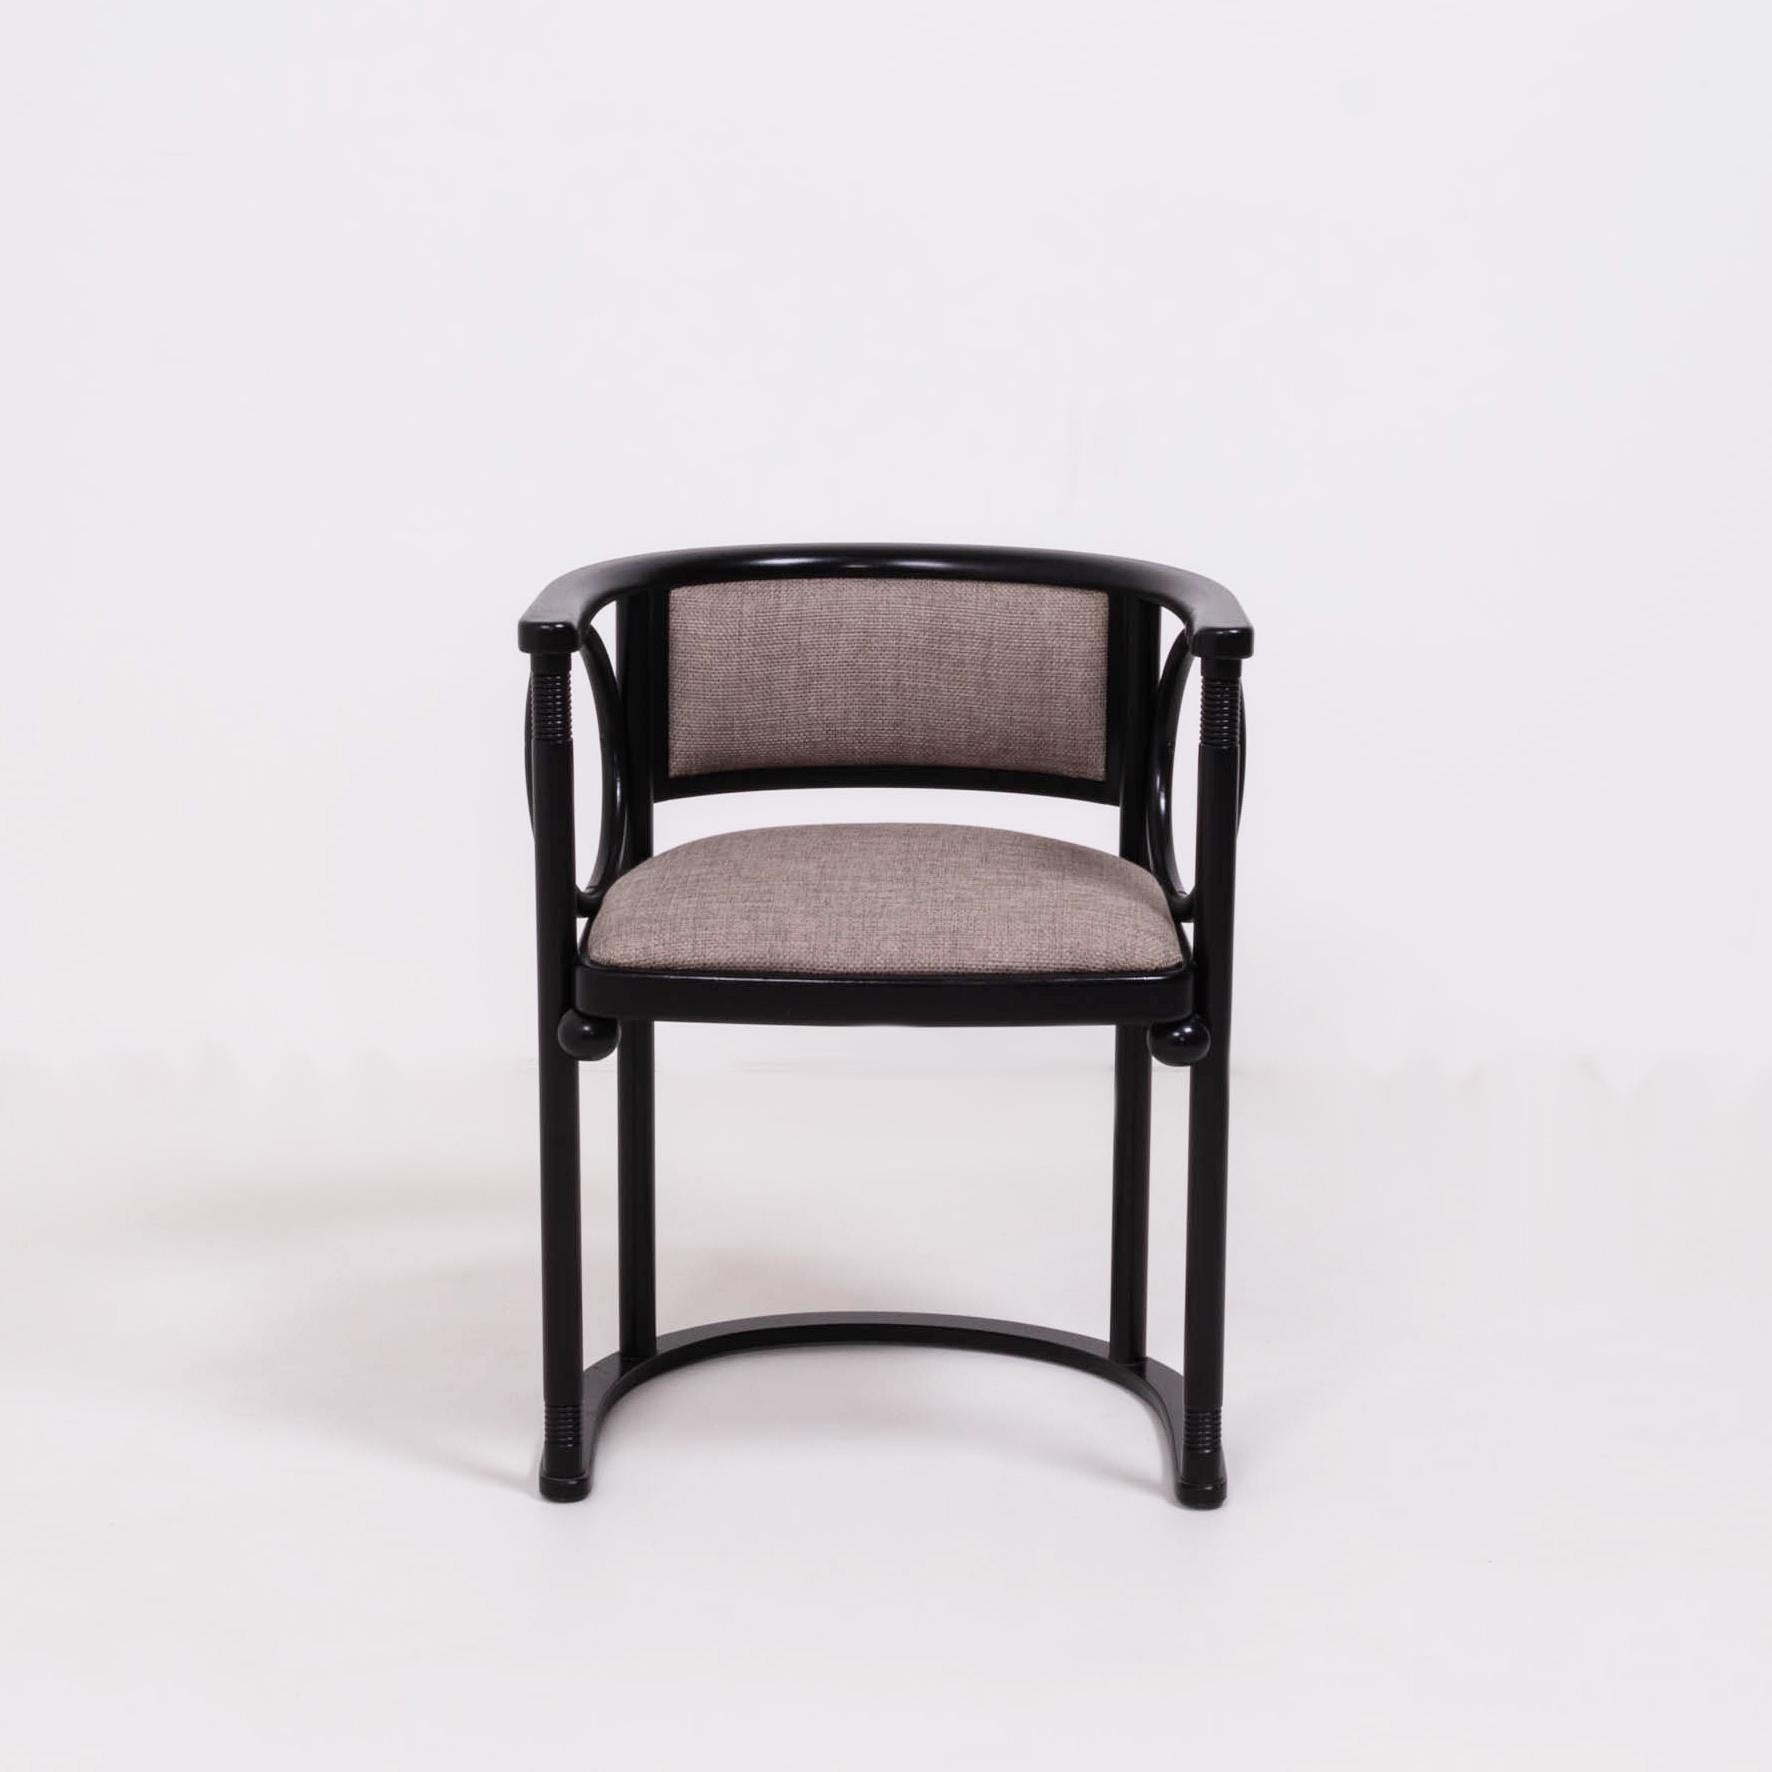 Austrian Art Deco Josef Hoffmann by Wittmann Black Bentwood Dining Chairs, Set of 6